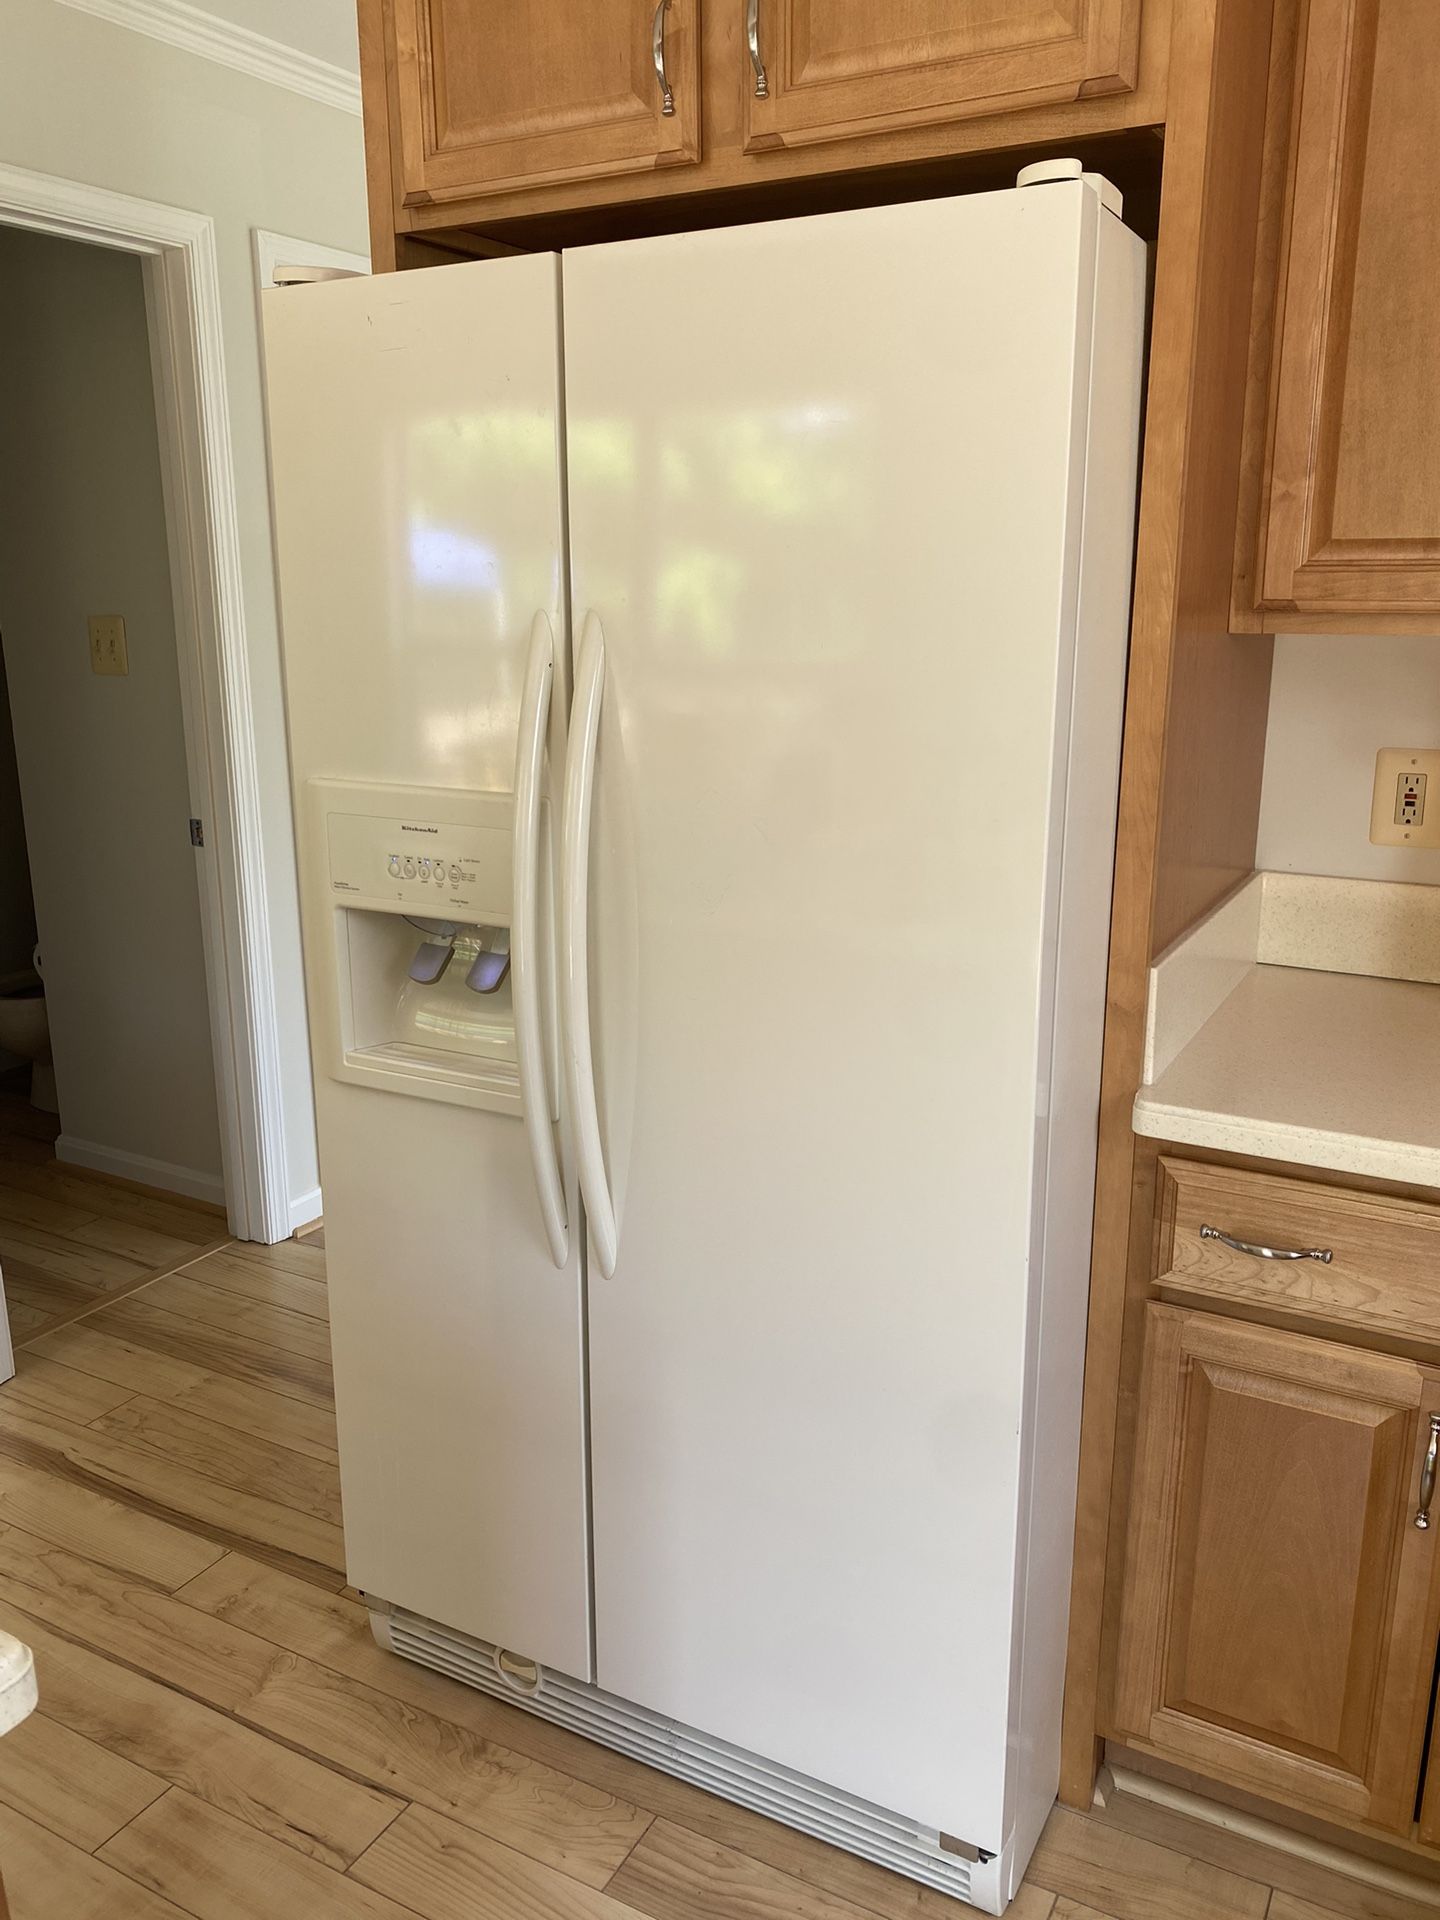 Kitchen Aid Refrigerator 36